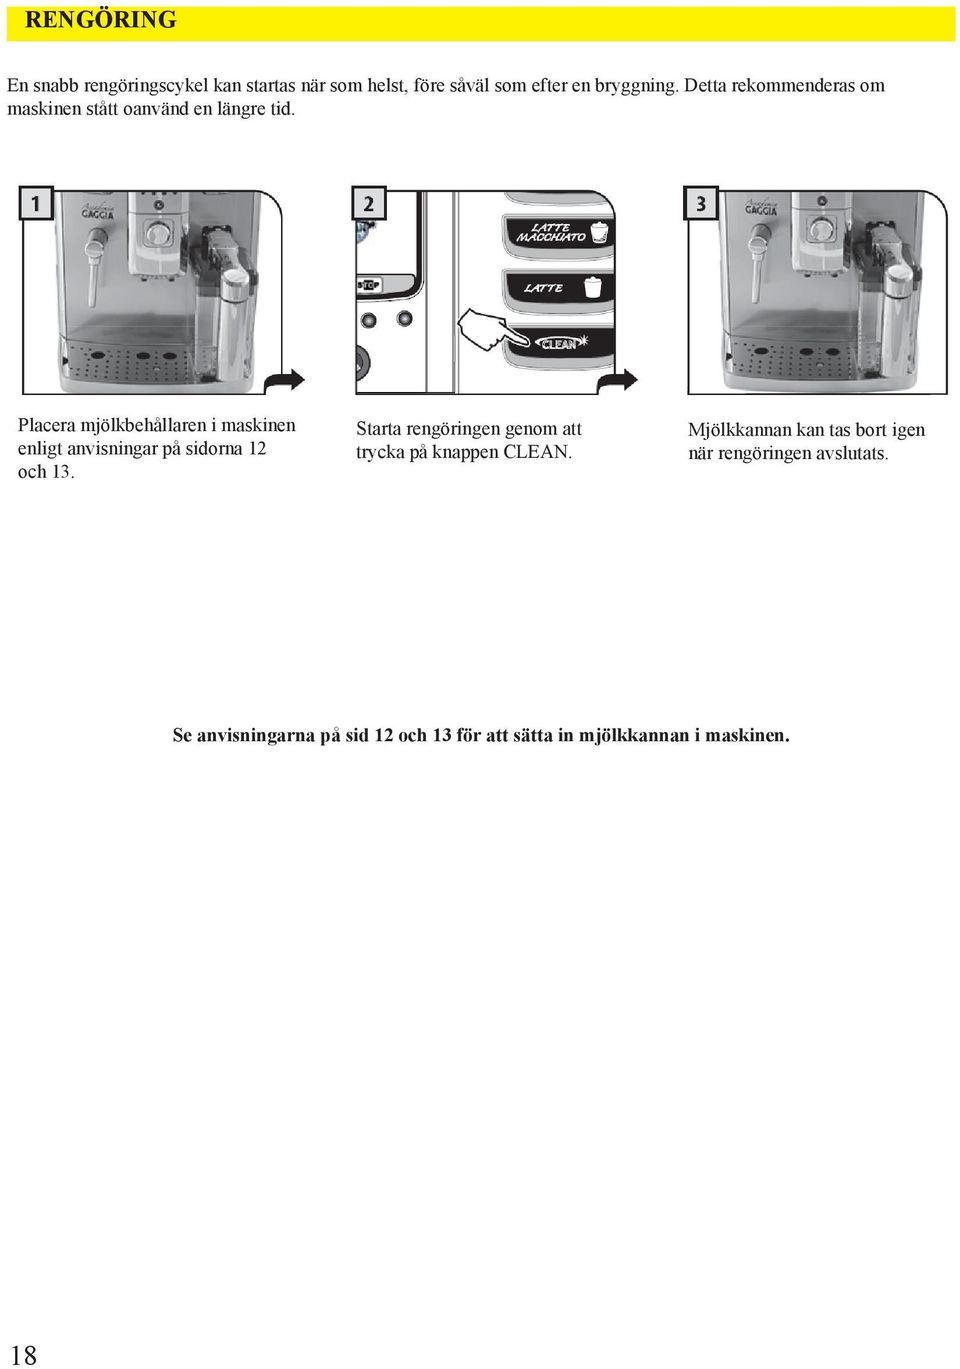 Placera mjölkbehållaren i maskinen enligt anvisningar på sidorna 12 och 13.